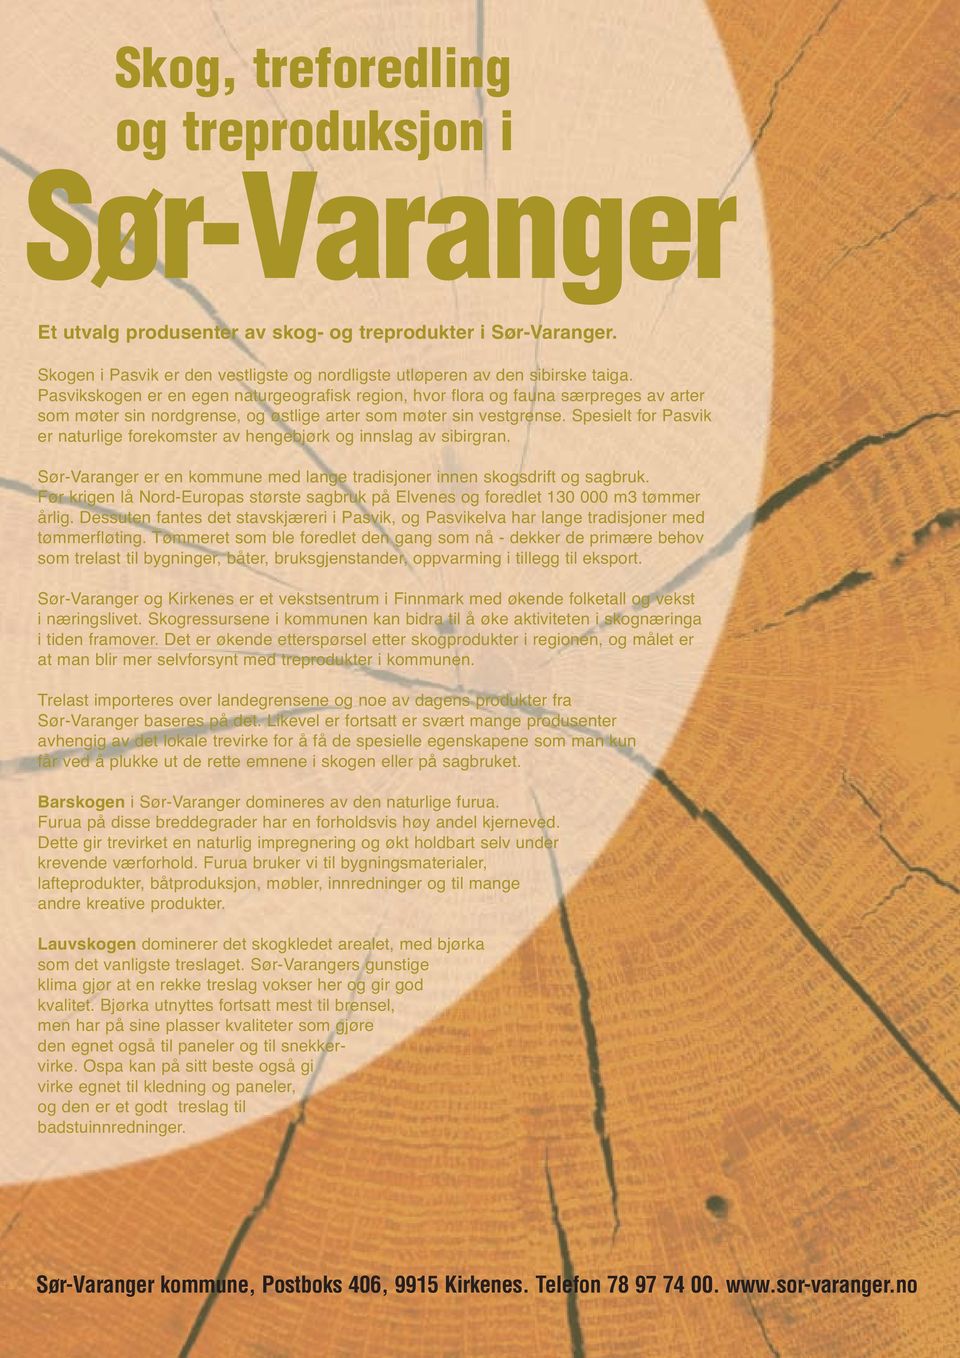 Spesielt for Pasvik er naturlige forekomster av hengebjørk og innslag av sibirgran. Sør-Varanger er en kommune med lange tradisjoner innen skogsdrift og sagbruk.